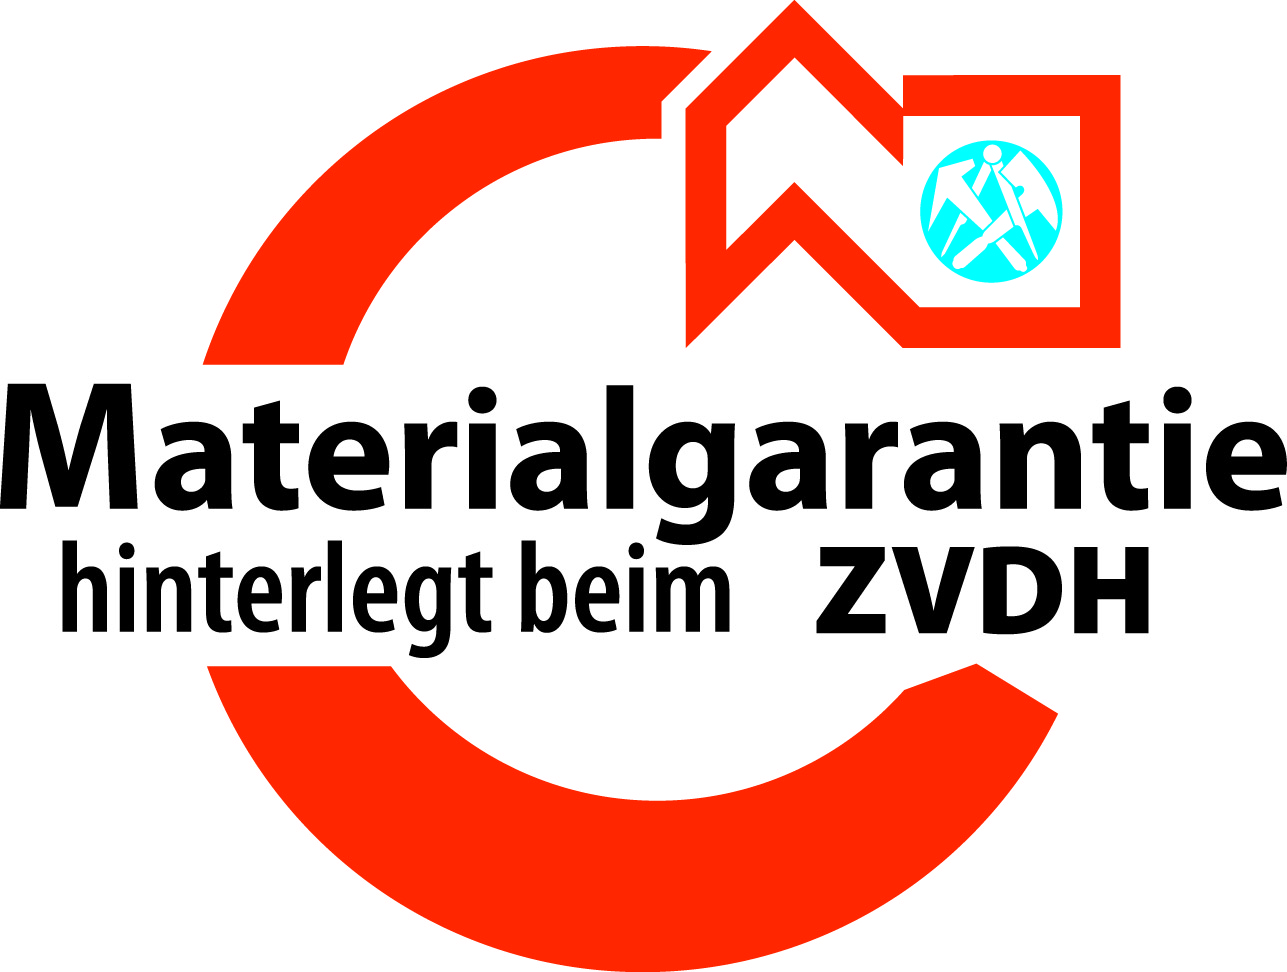 ZVDH Materialgarantie.png